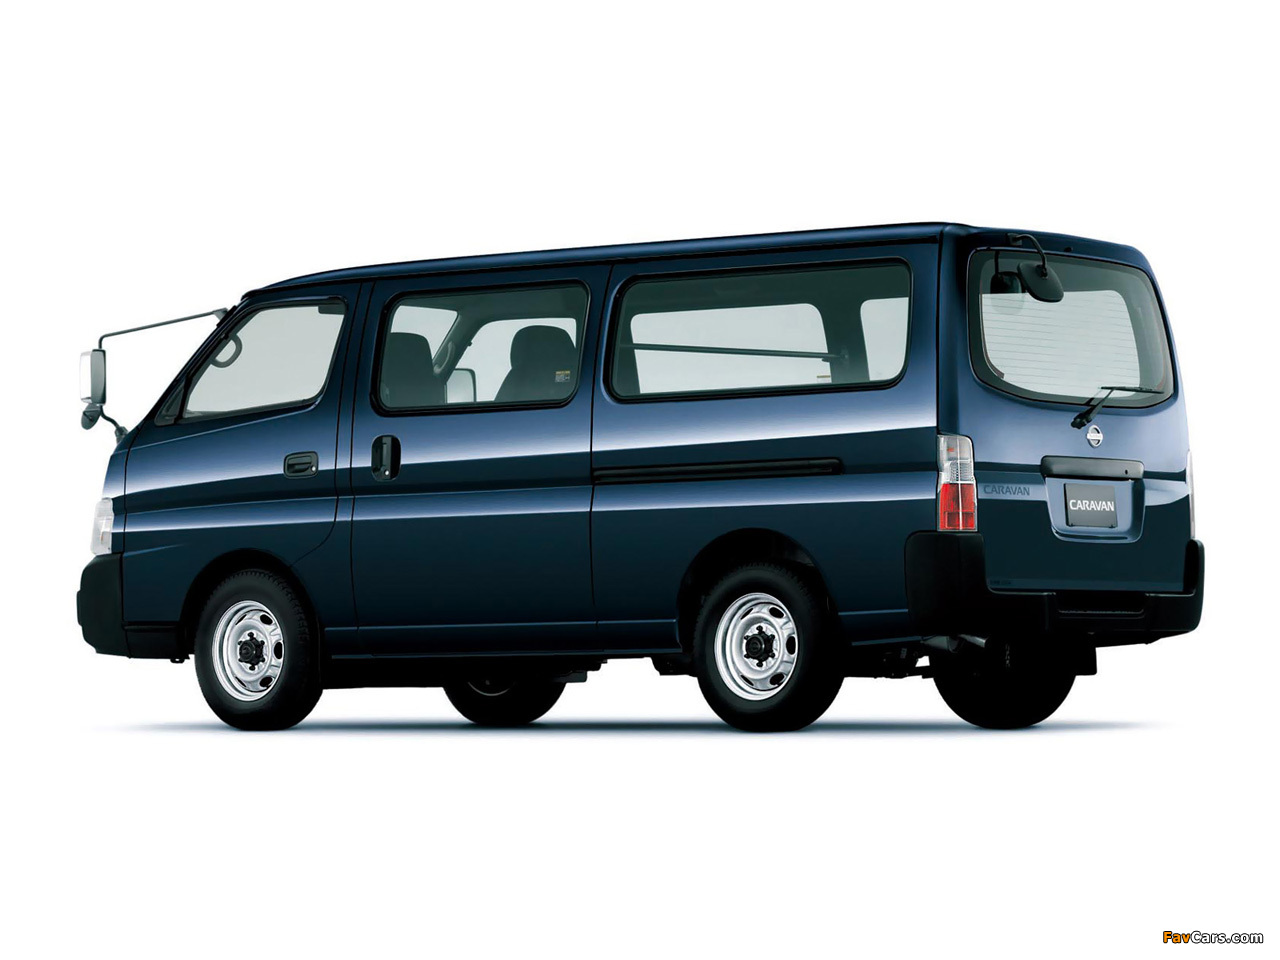 Nissan Caravan LWB (E25) 2005 images (1280 x 960)